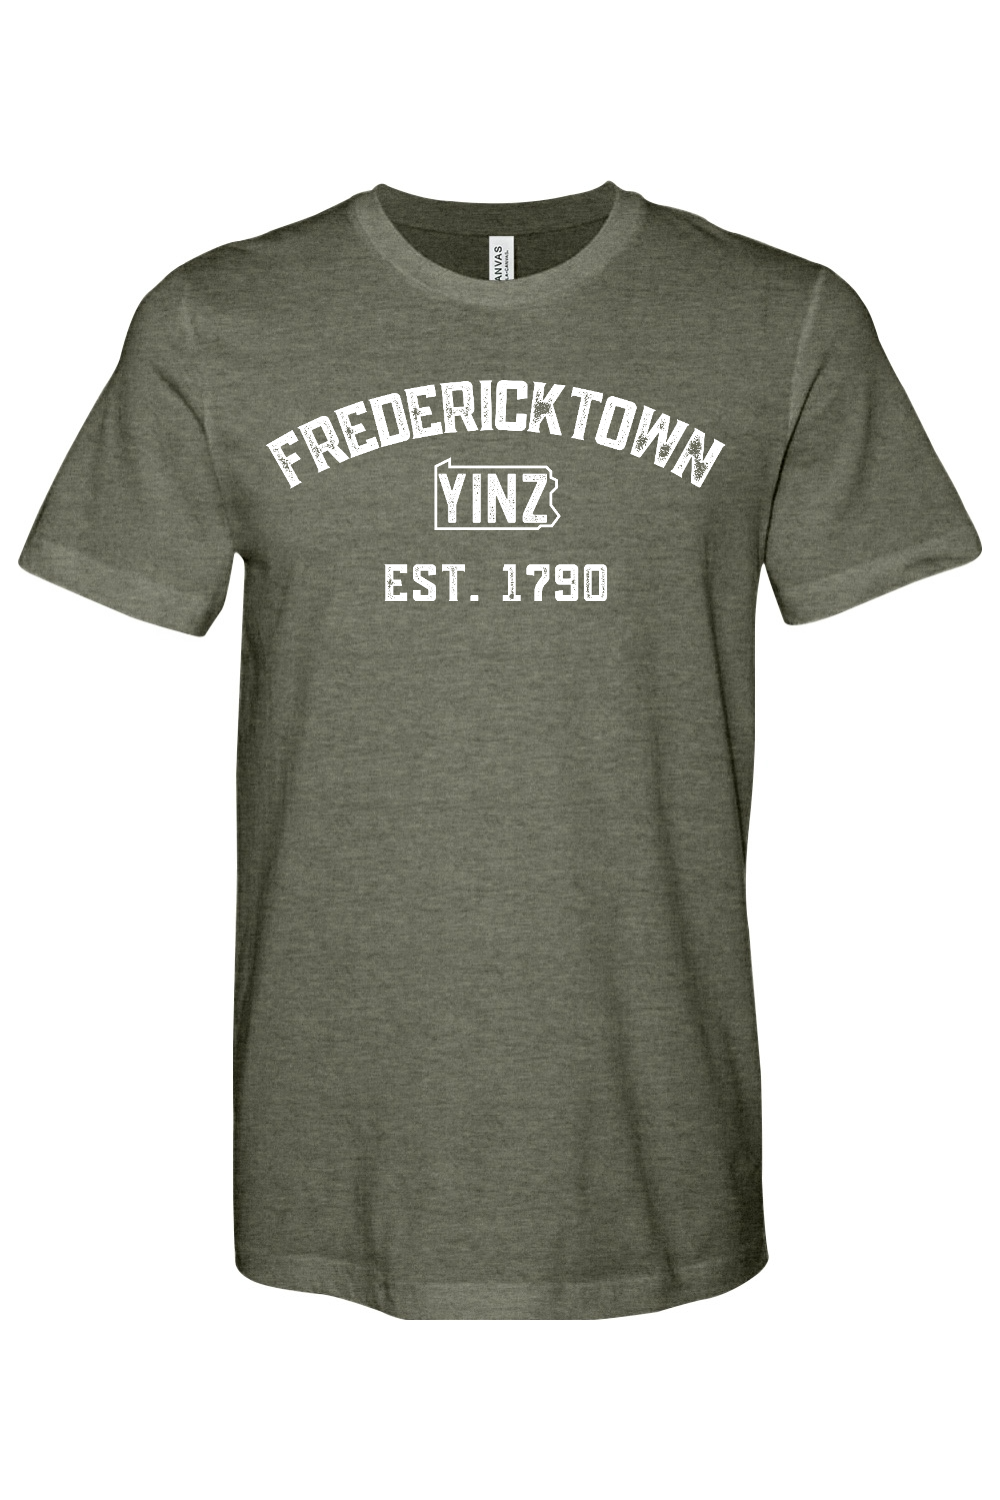 Fredericktown Yinzylvania - Yinzylvania